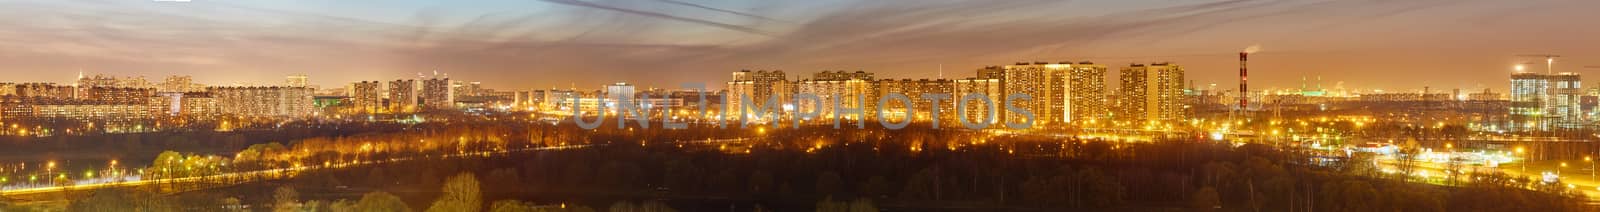 Night Moscow panorama by rasika108